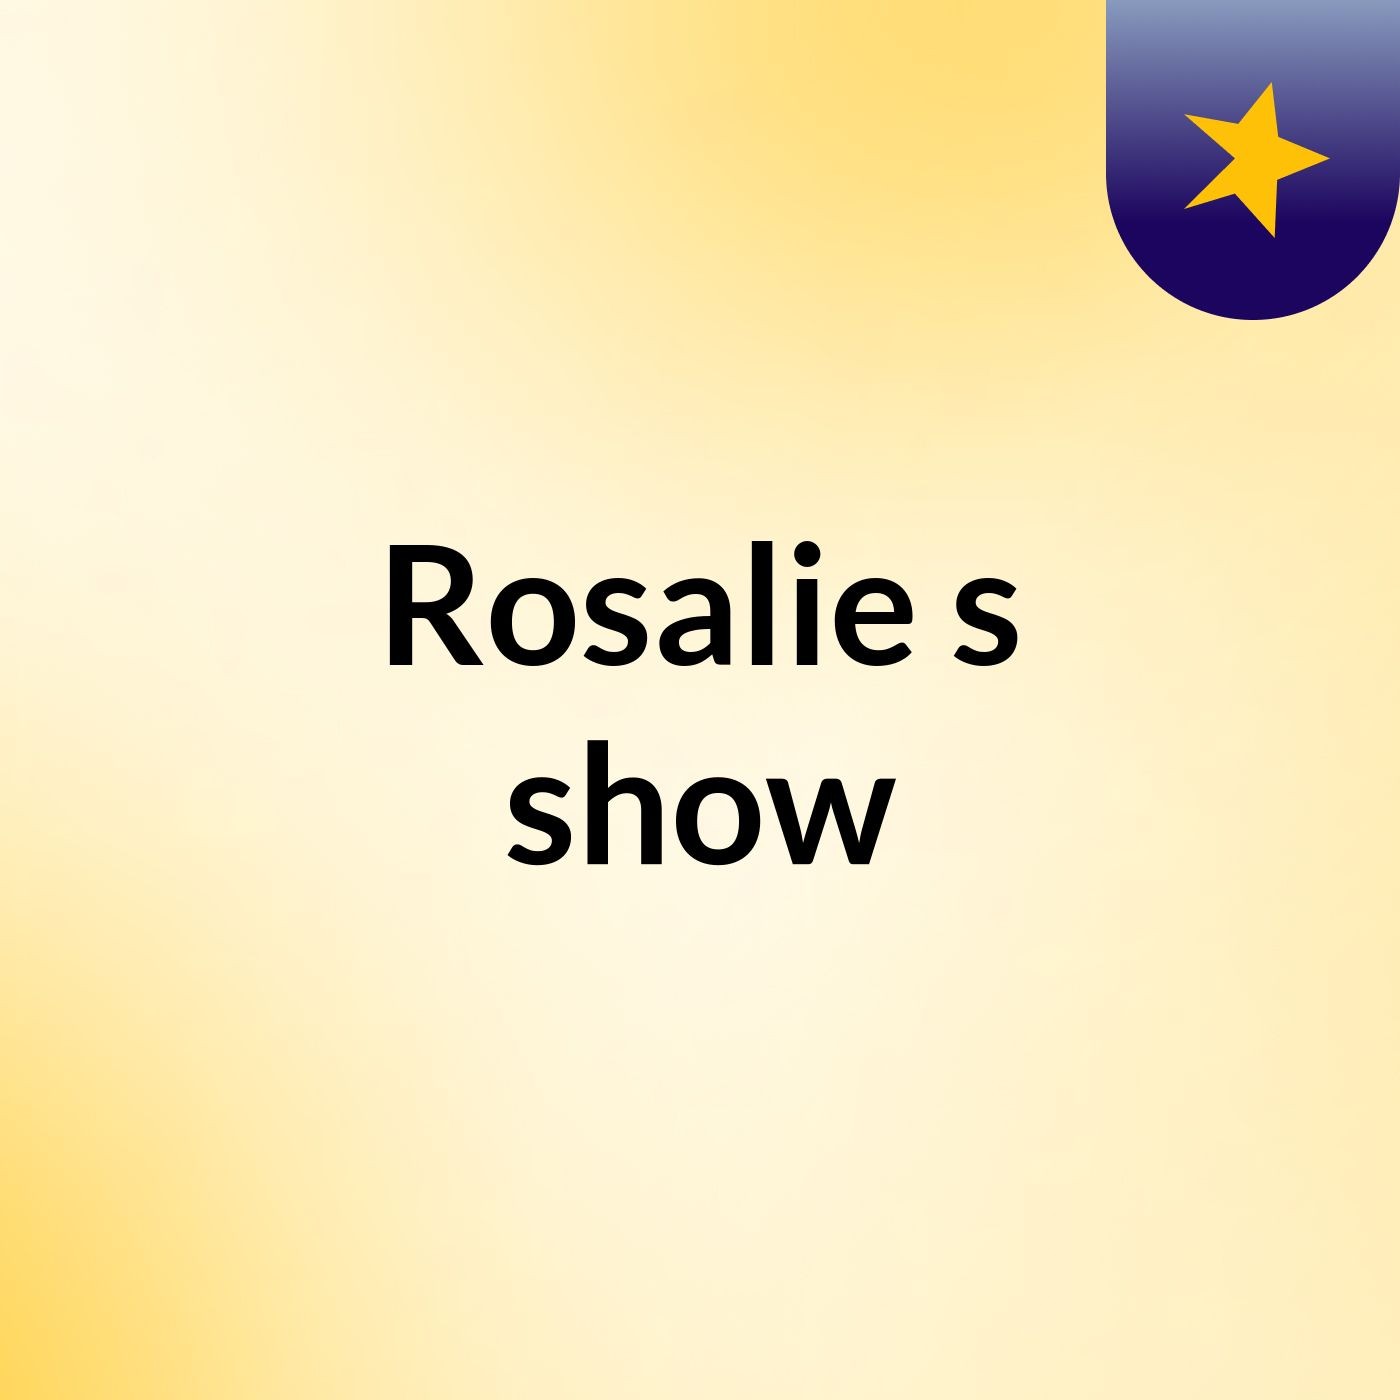 Rosalie's show